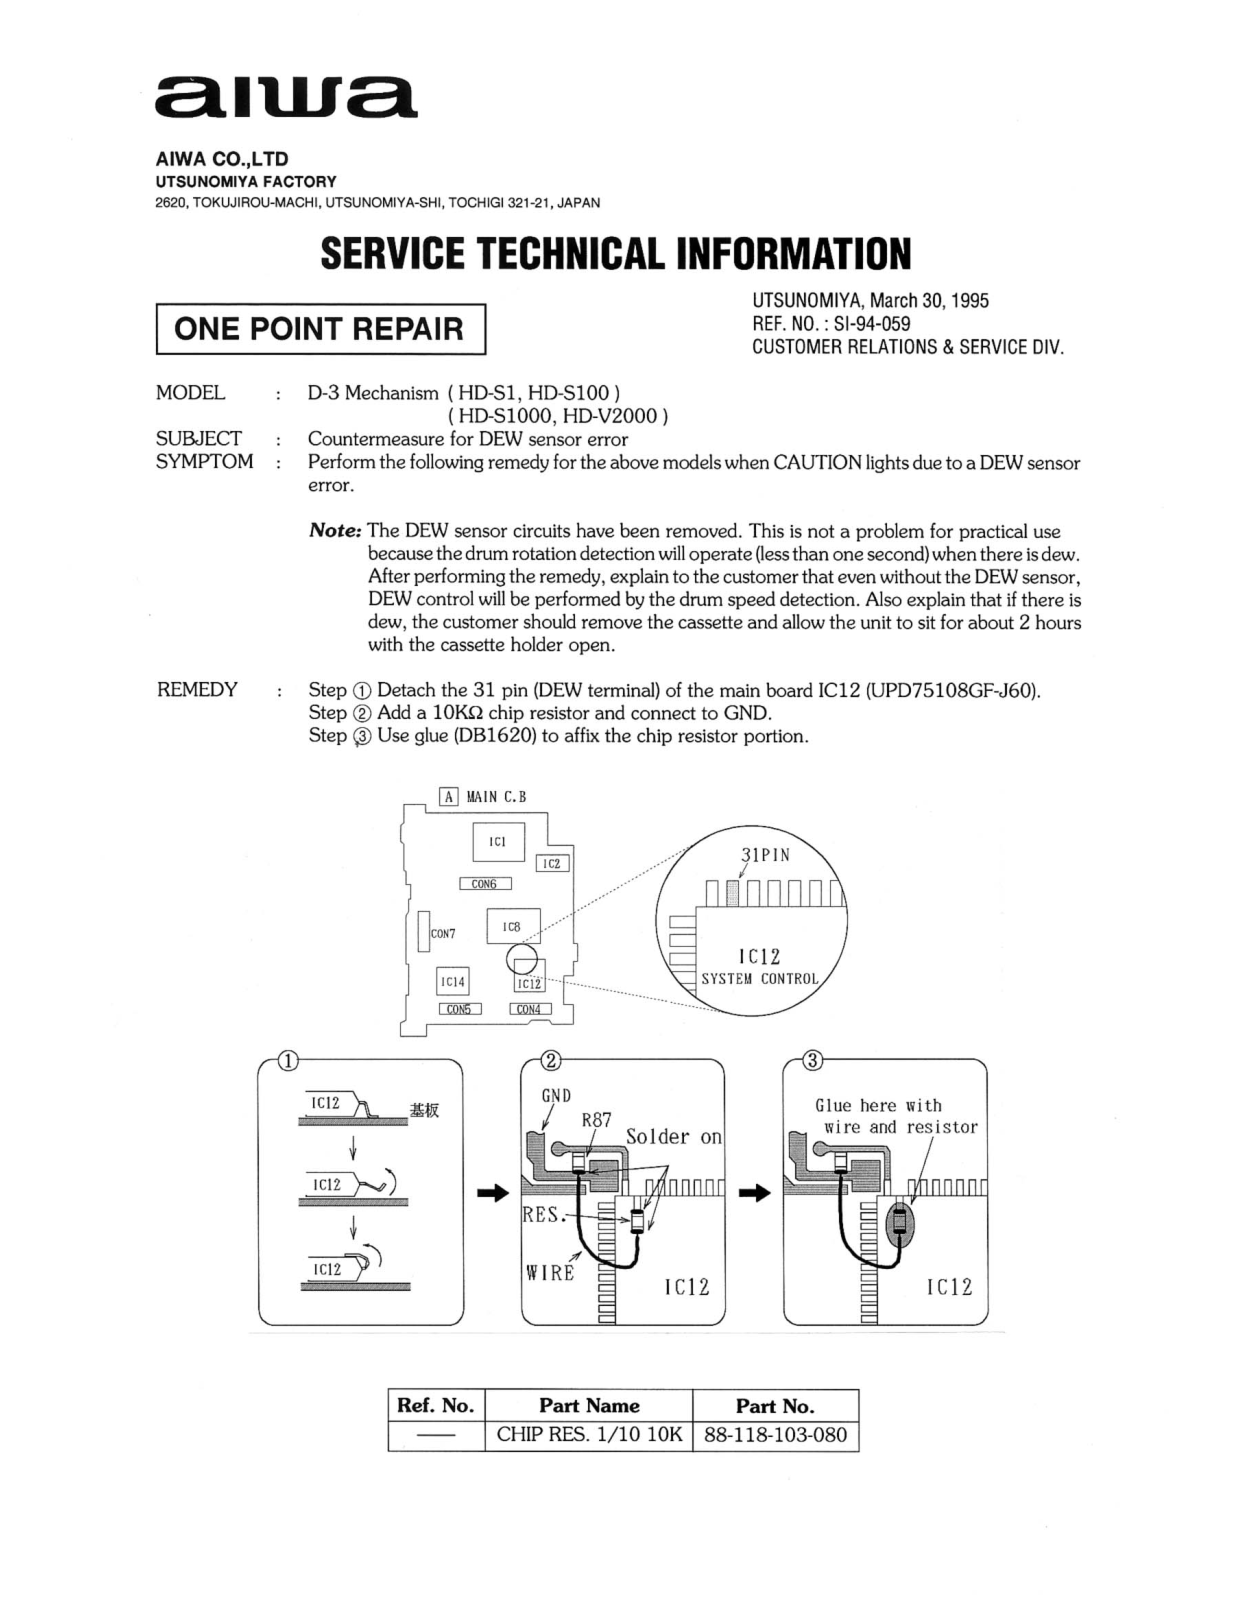 Aiwa hd s1, hd s100, hd s1000, hd v2000 Service Manual